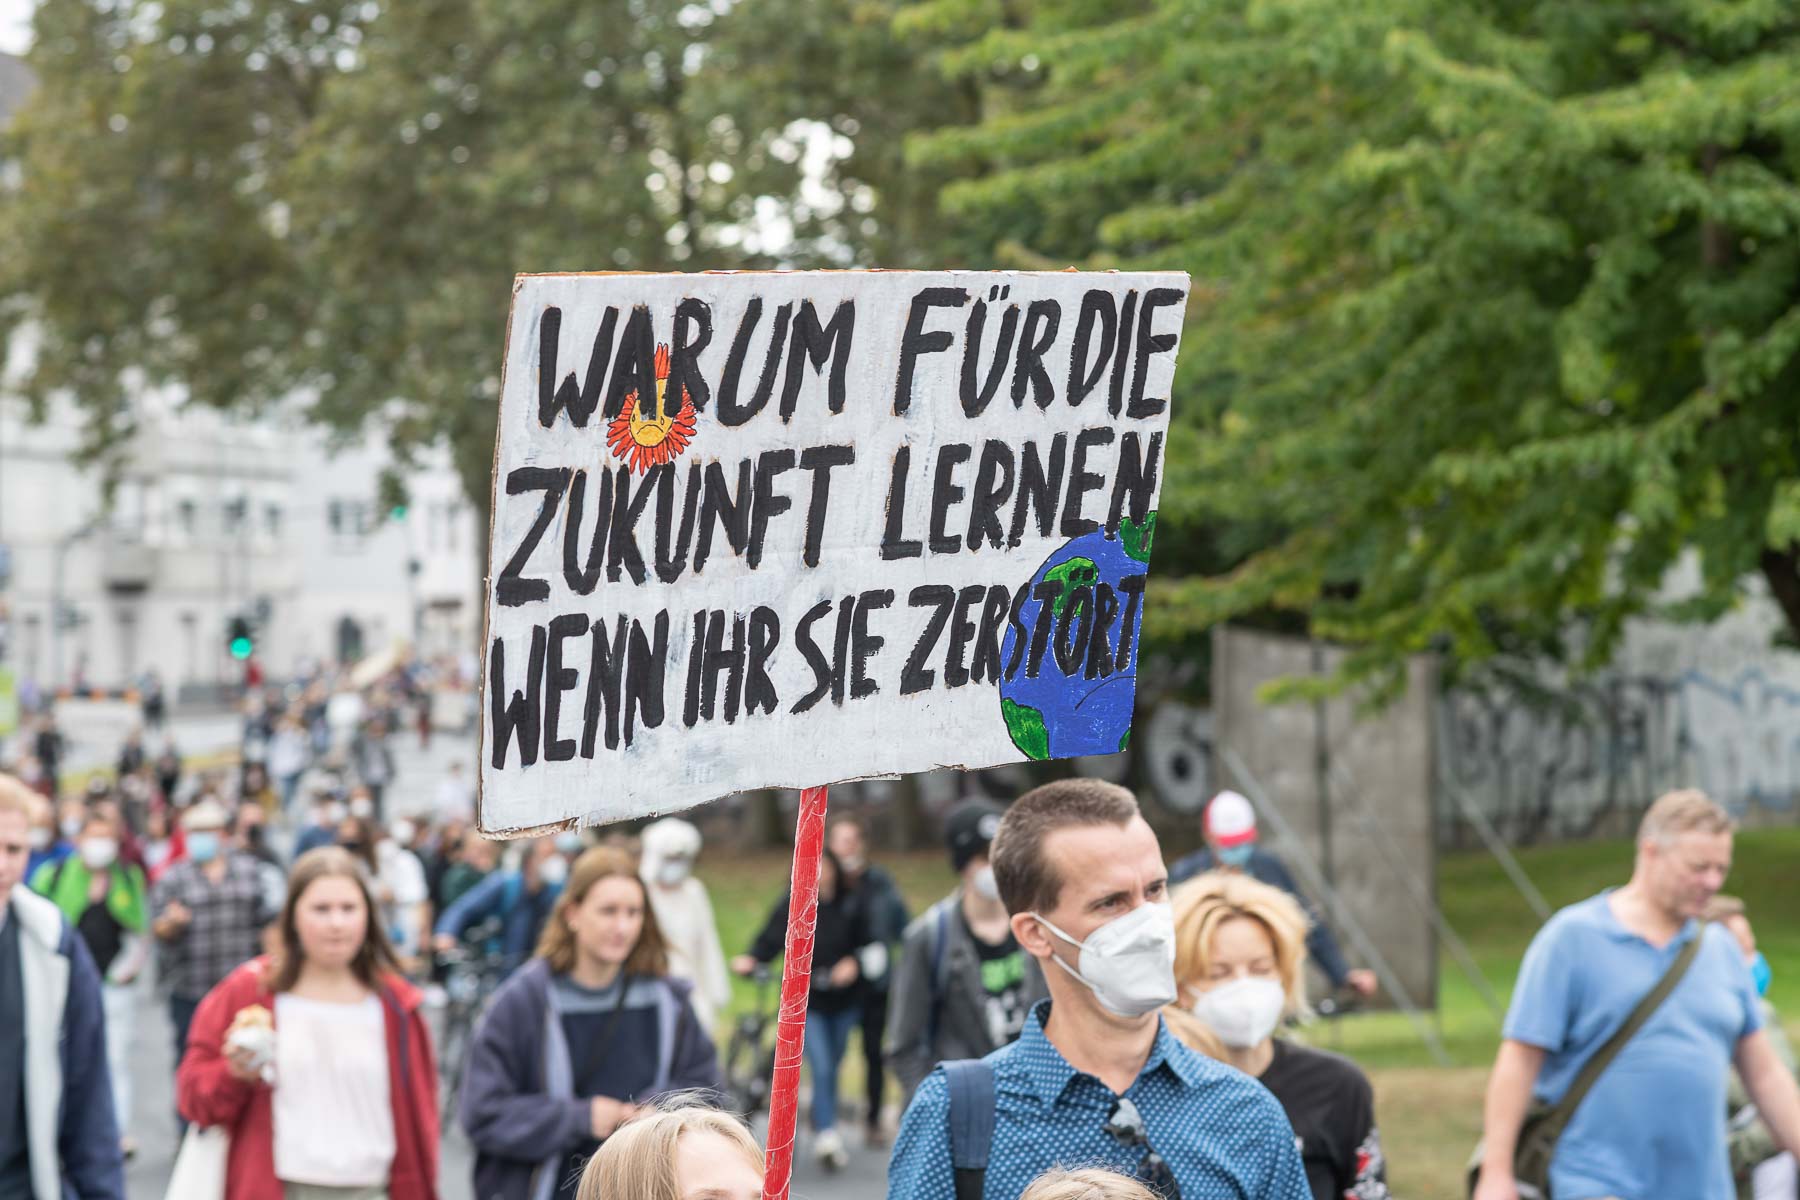 Rechtsrheinisch, Klimastreik von Fridays for Future in Köln. Schilder mit Botschaften werden gezeigt.